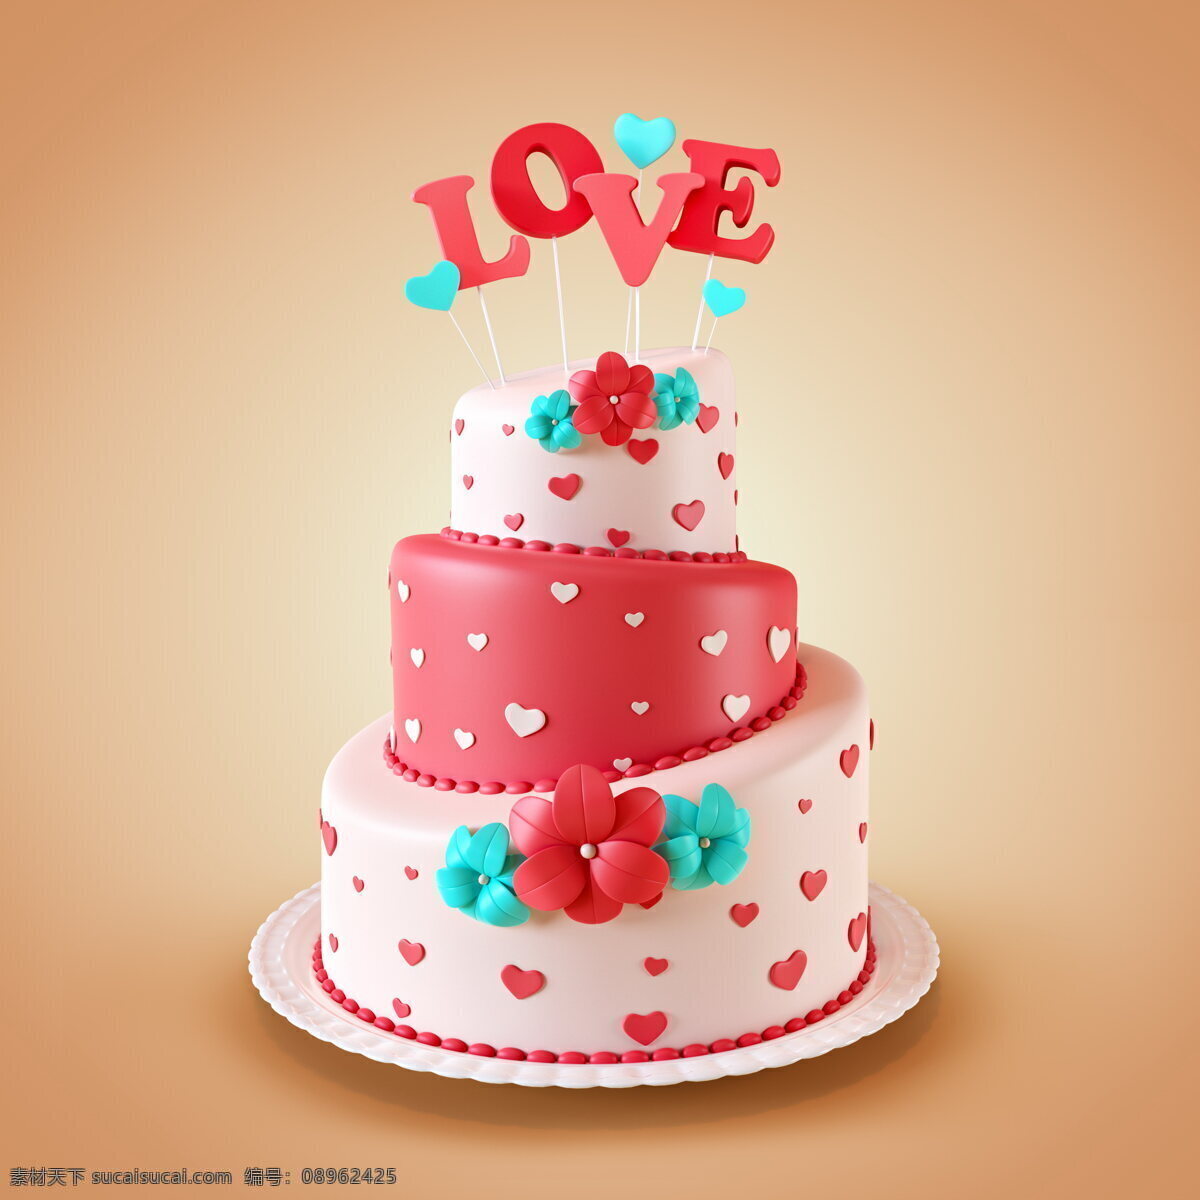 蛋糕 3d模型 love 卡通模型 3d卡通 蛋糕模型